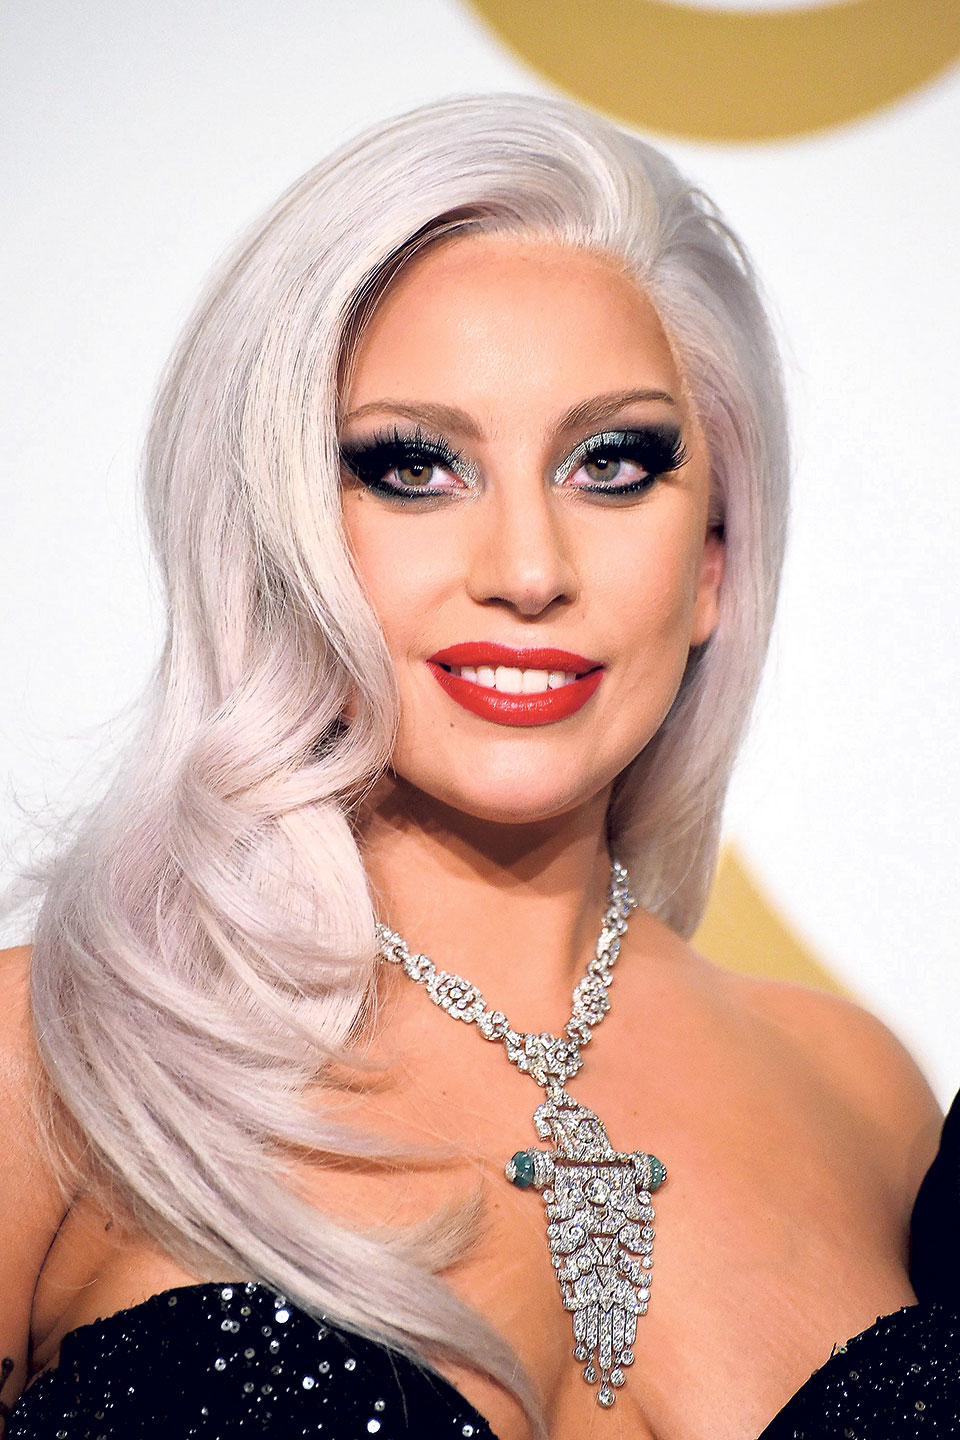 Gaga suffers from fibromyalgia